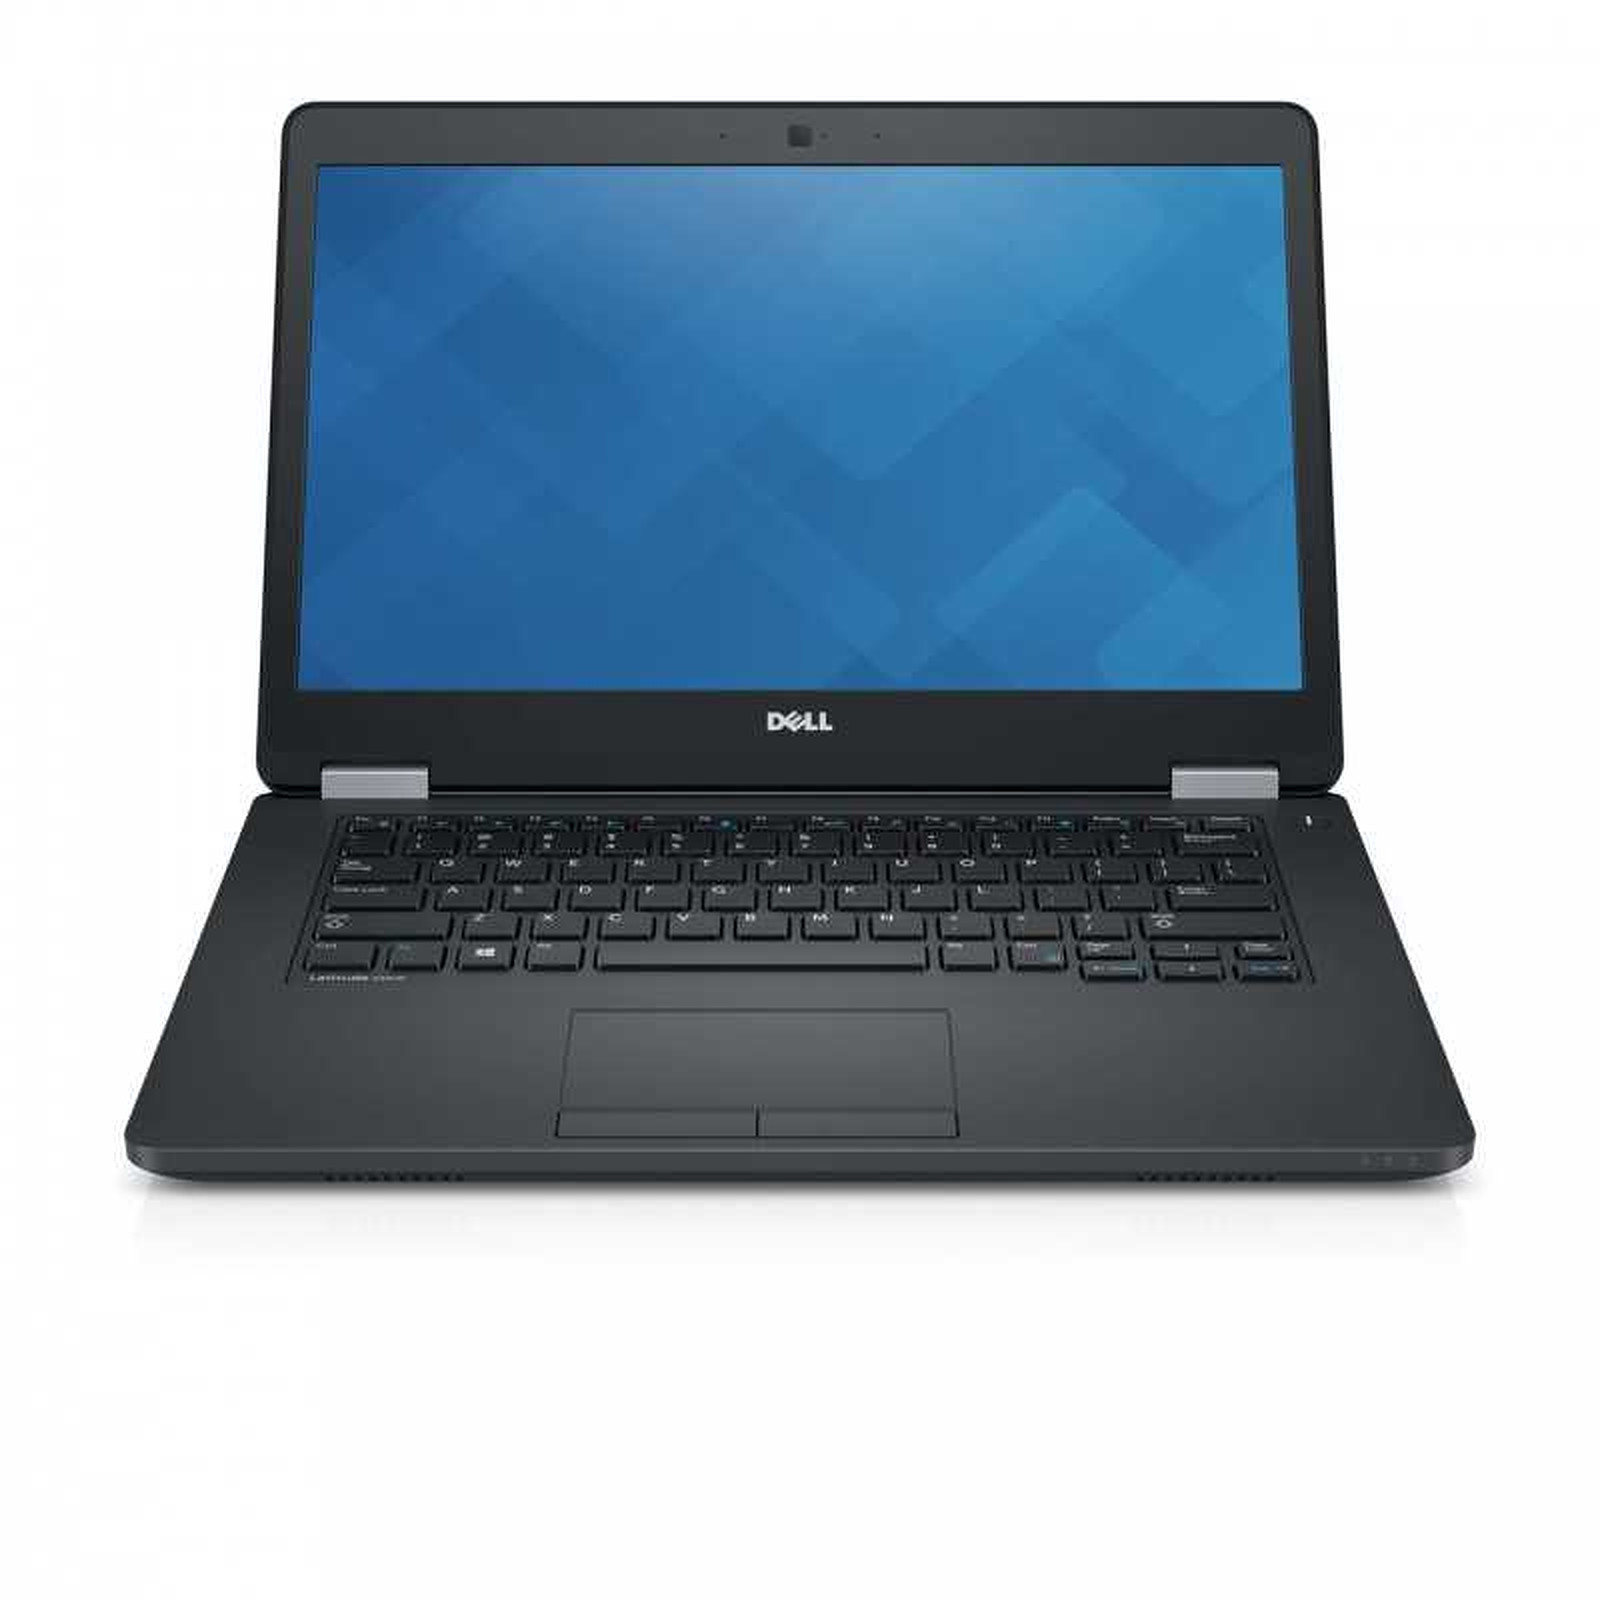 Dell Latitude E5470 (LATE5470-FHD-1046) · Reconditionne - PC portable reconditionne Dell